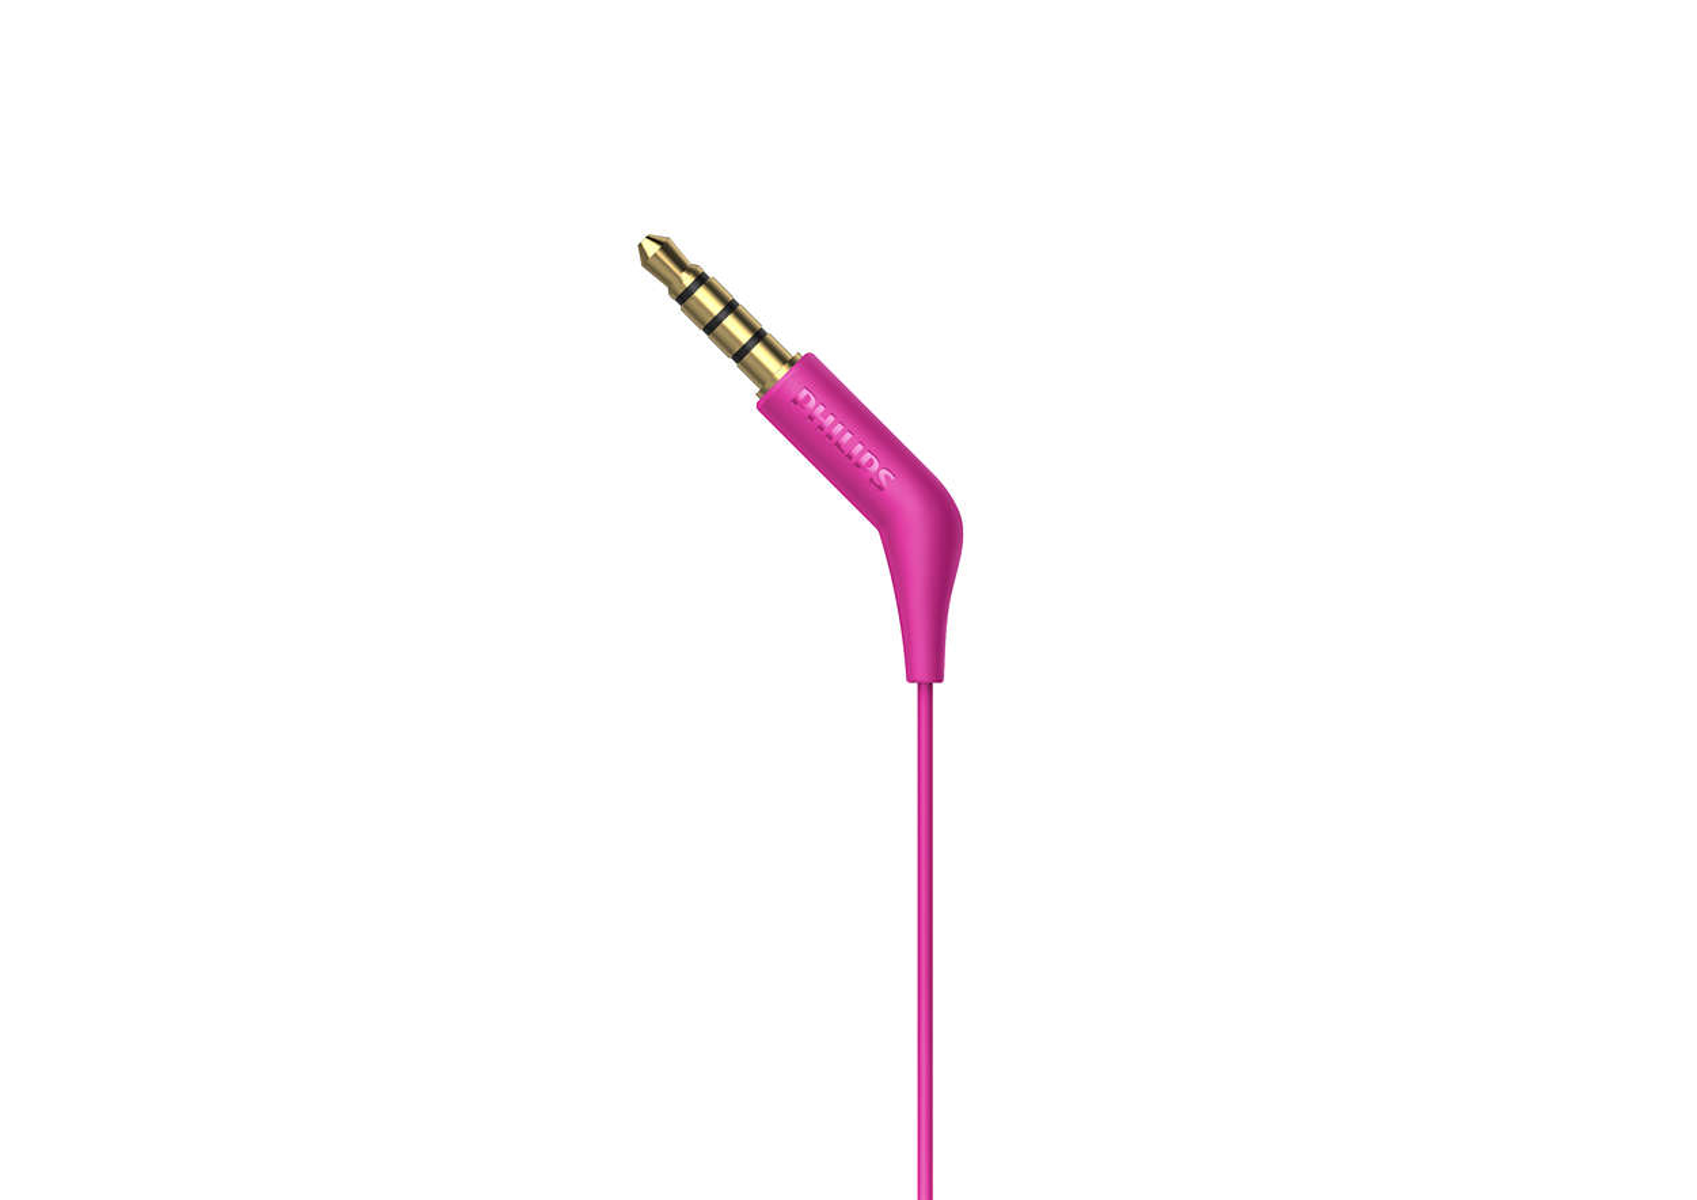 PHILIPS In-ear Kopfhörer E1105PK/00, Pink